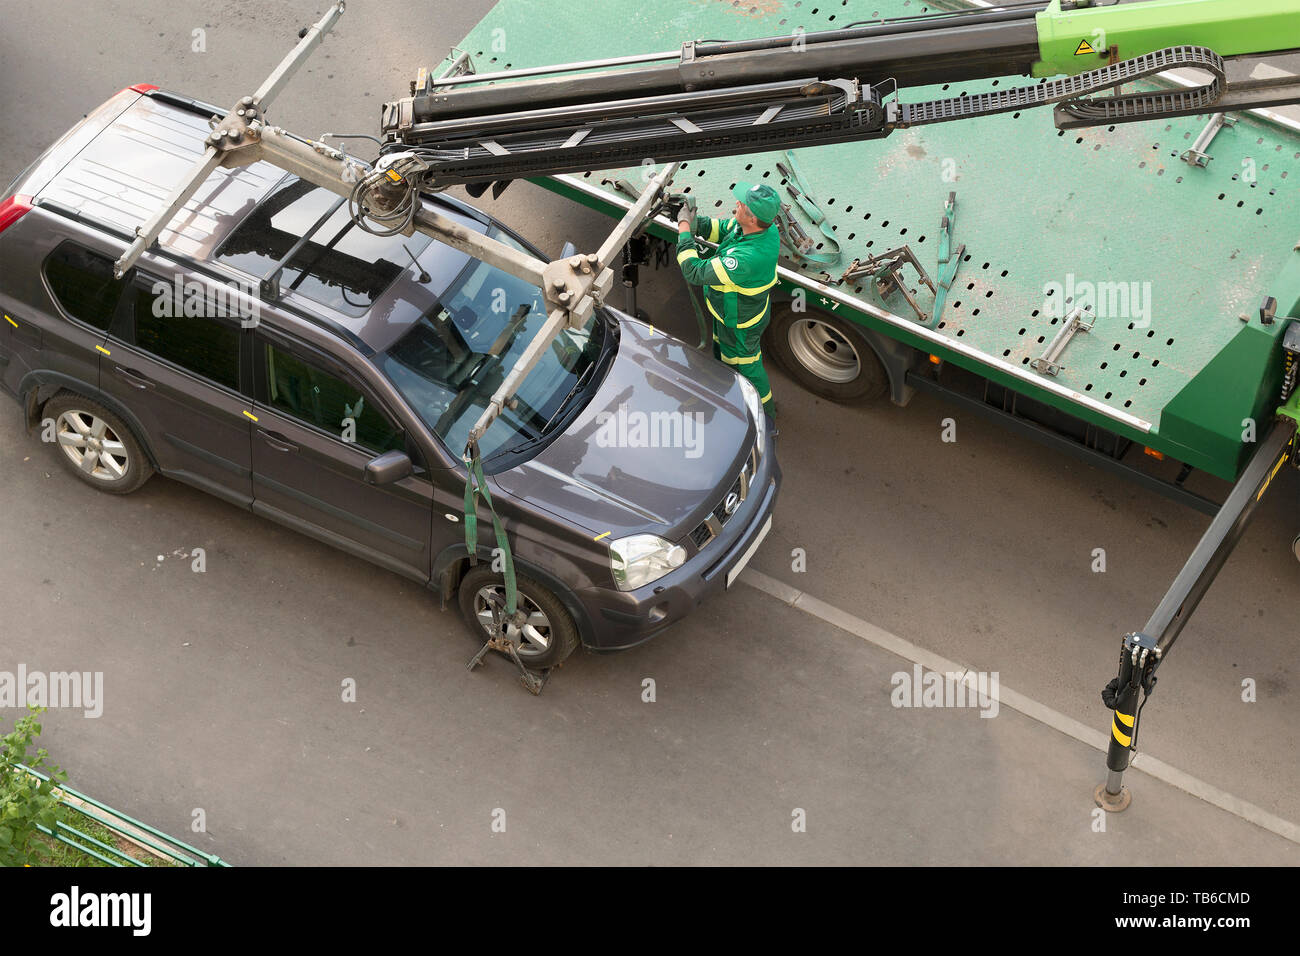 Moskau/Russland - Mai 2019: Evakuierung der Auto für das falsche Parken auf dem Bürgersteig. Bild kann für Themen wie Verkehrsdelikt, Reisen verwendet werden, tr Stockfoto